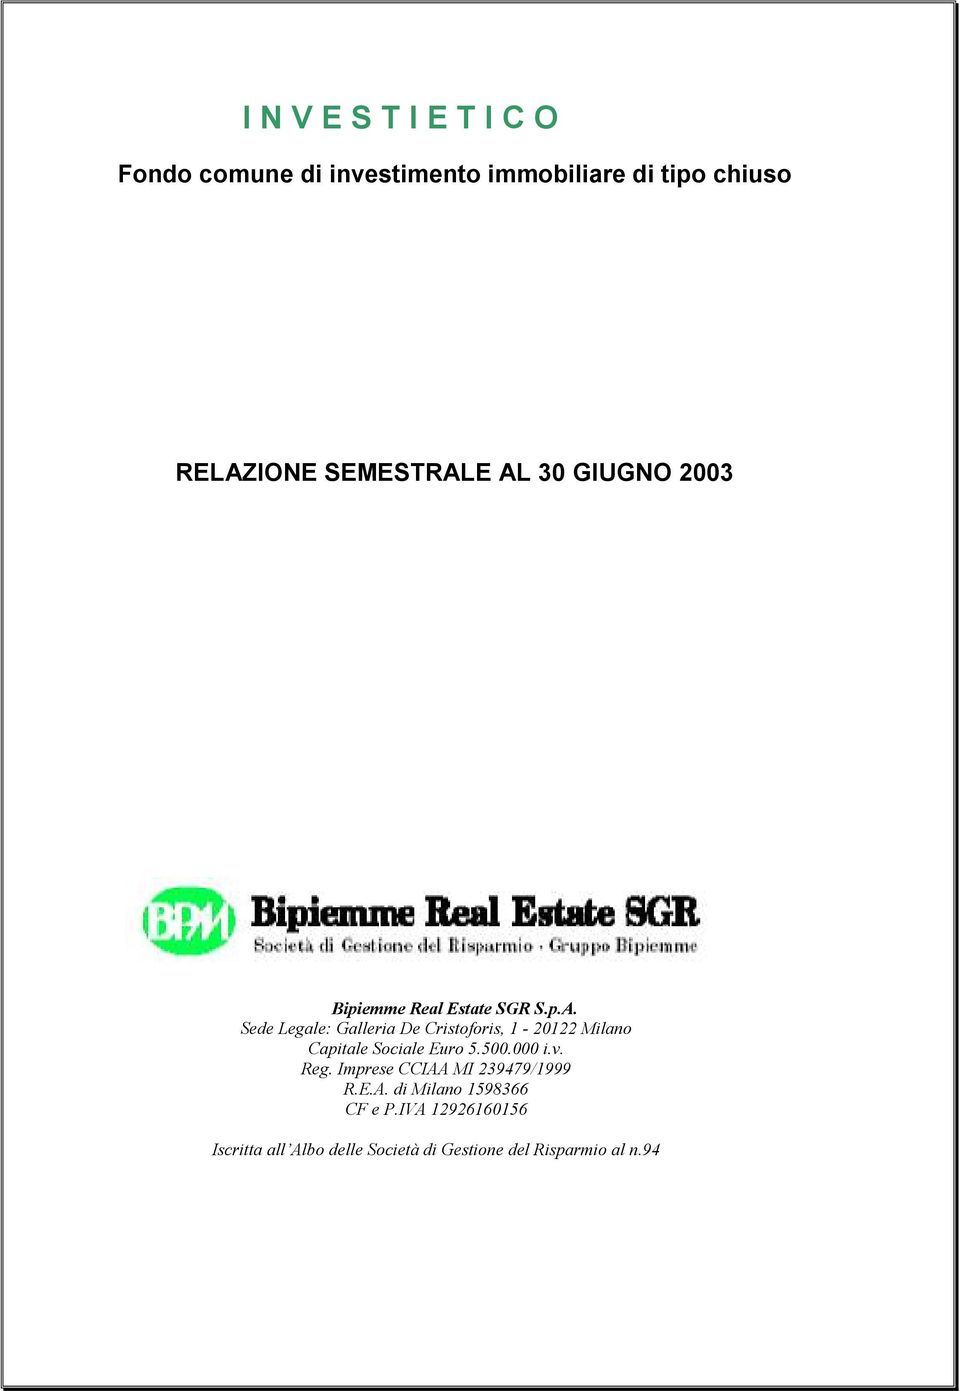 500.000 i.v. Reg. Imprese CCIAA MI 239479/1999 R.E.A. di Milano 1598366 CF e P.